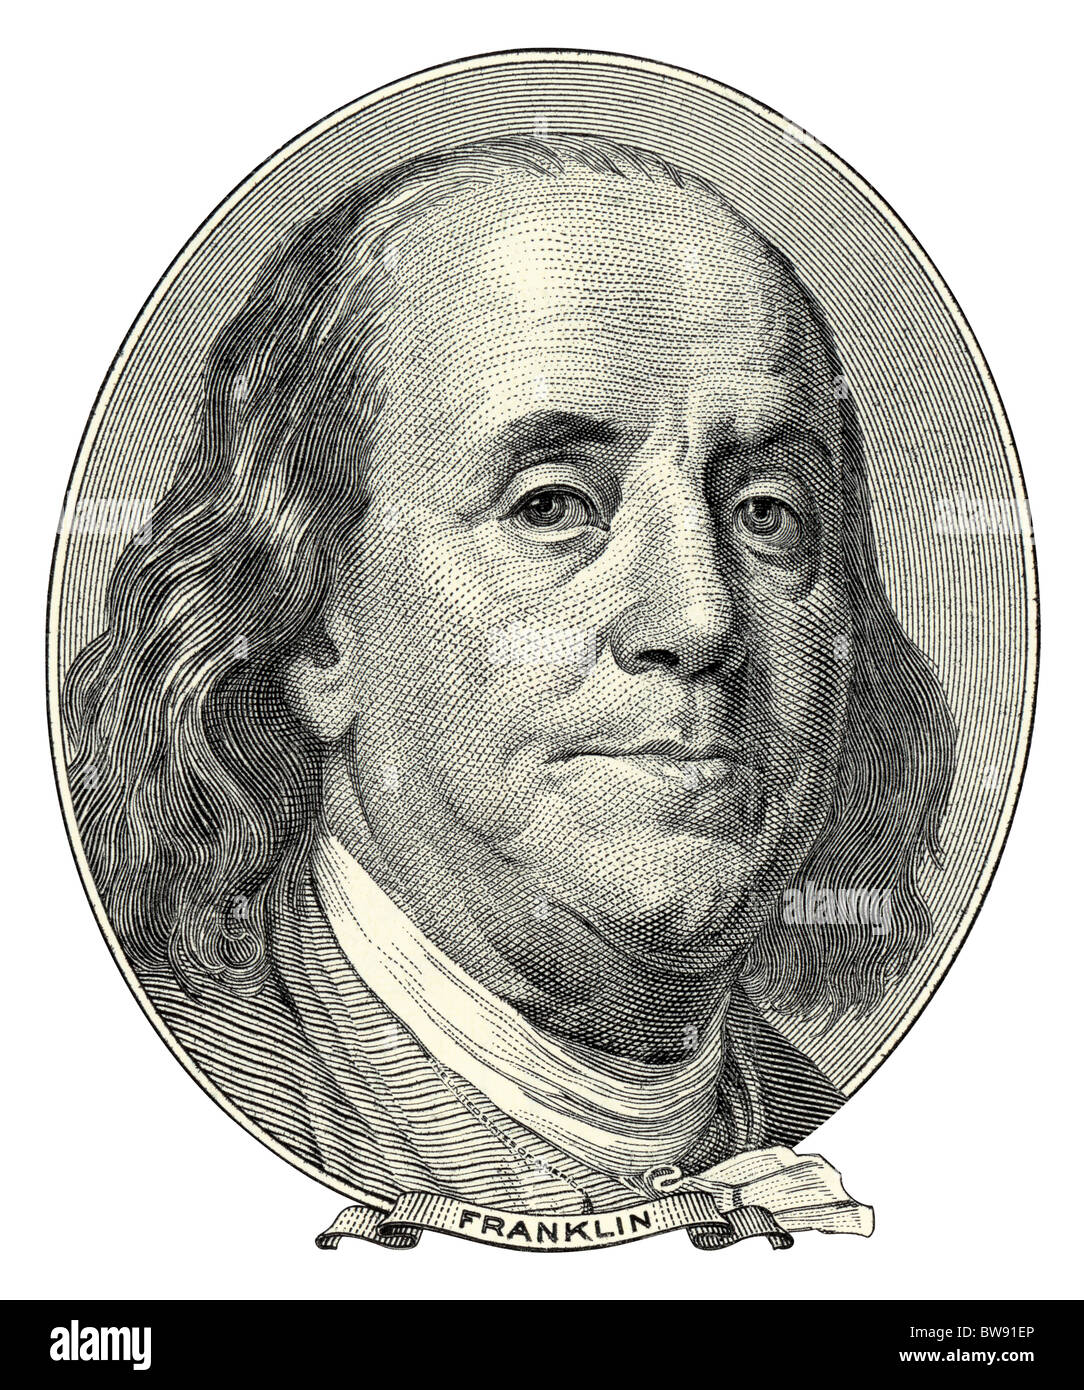 Portrait de Benjamin Franklin qu'il en a l'air sur one hundred dollar bill avers. Taille d'origine PAS DE GAMME. Banque D'Images